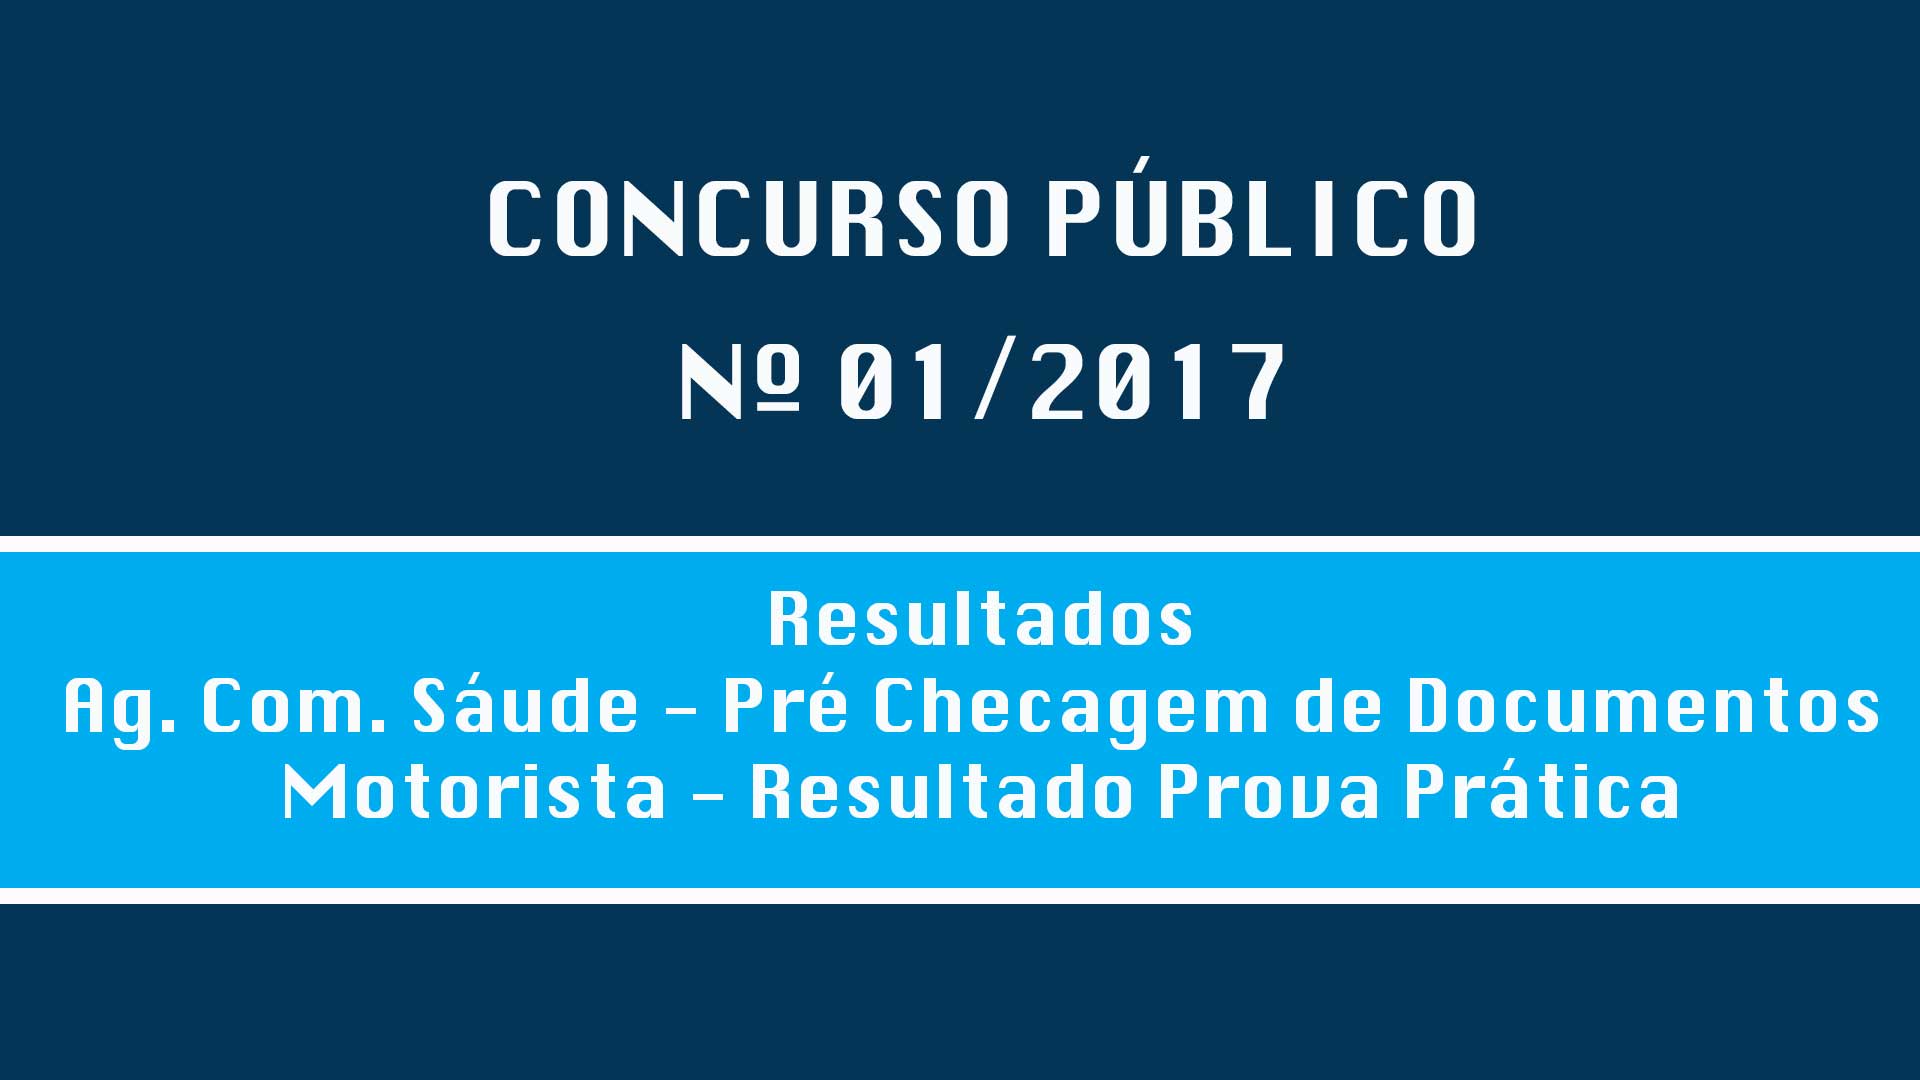 CONCURSO PÚBLICO Nº 001/2017 - RESULTADOS